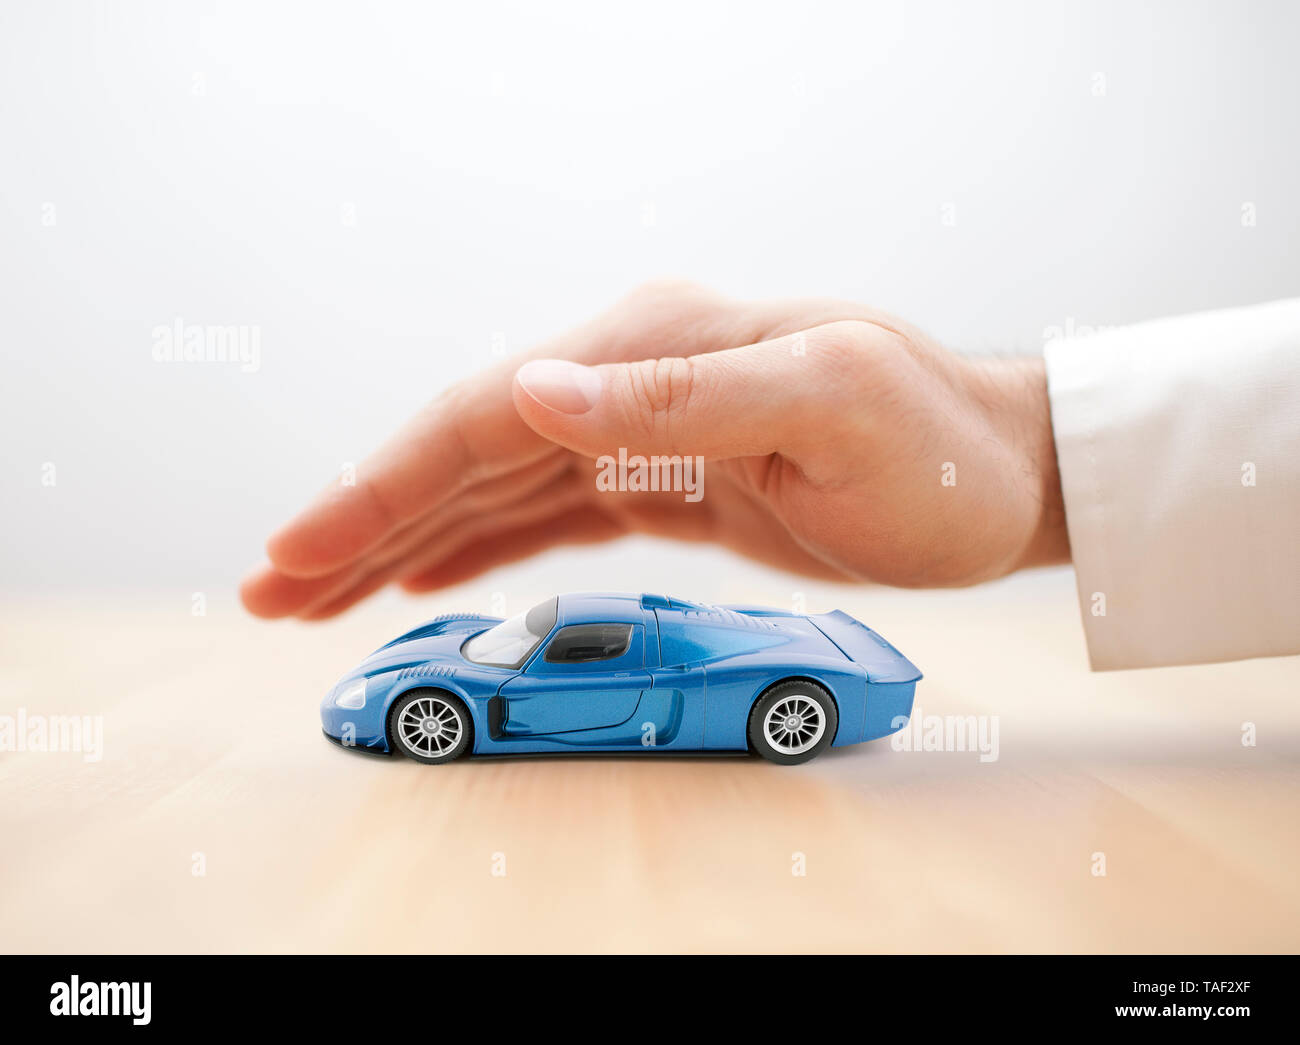 Assurance voiture concept avec voiture bleue à la main couverte de jouets Banque D'Images